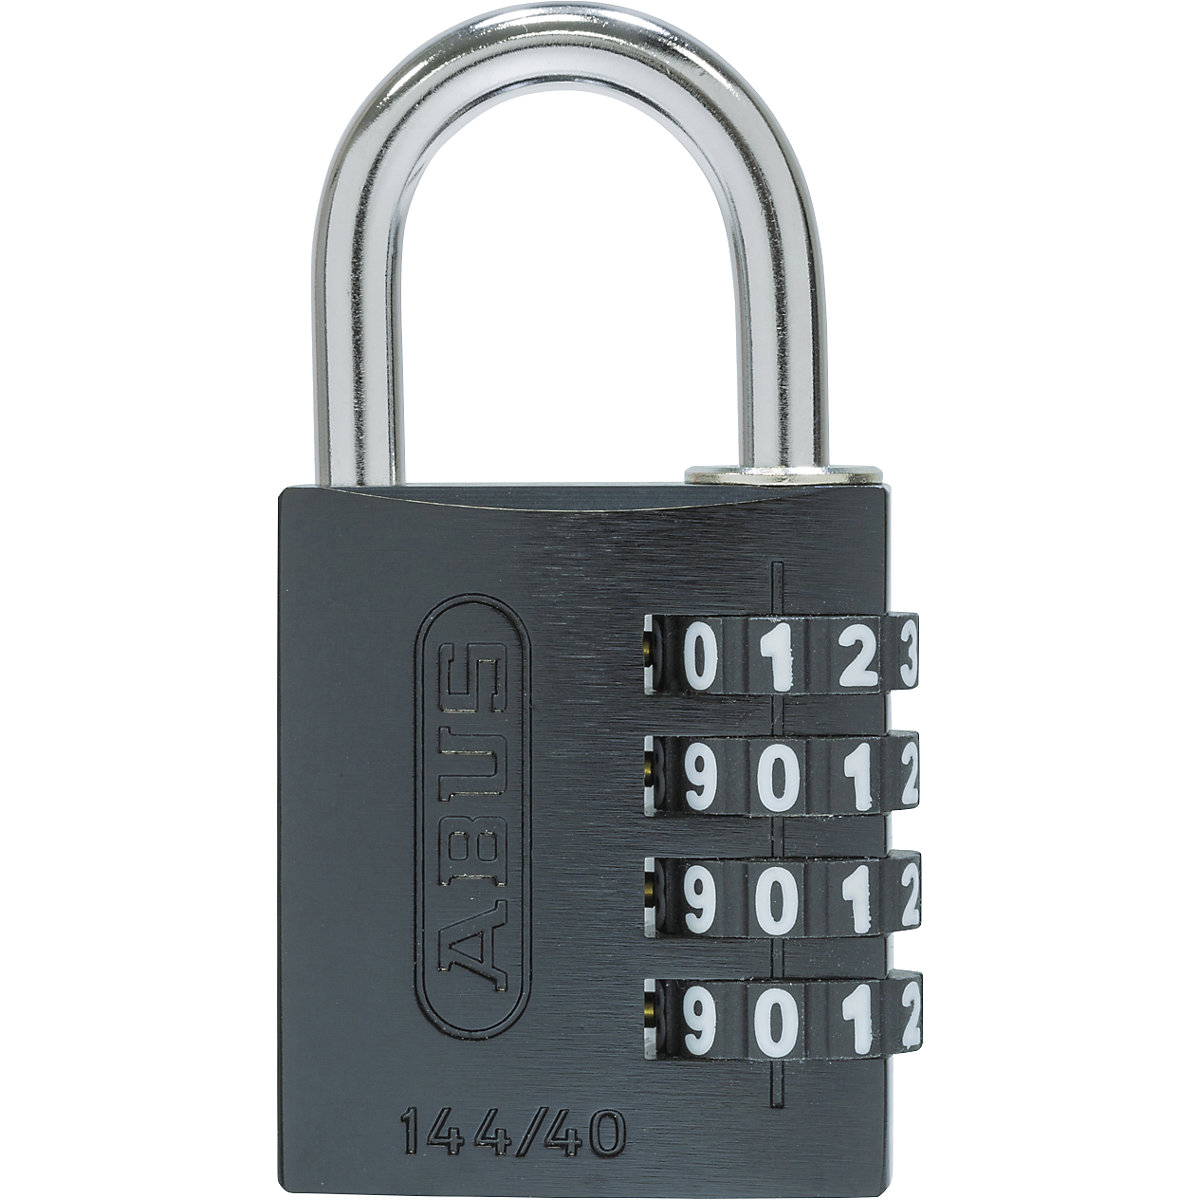 Brava s kombinacijom brojeva, aluminijska – ABUS, 144/40 Lock-Tag, pak. 6 kom., u crnoj boji-4